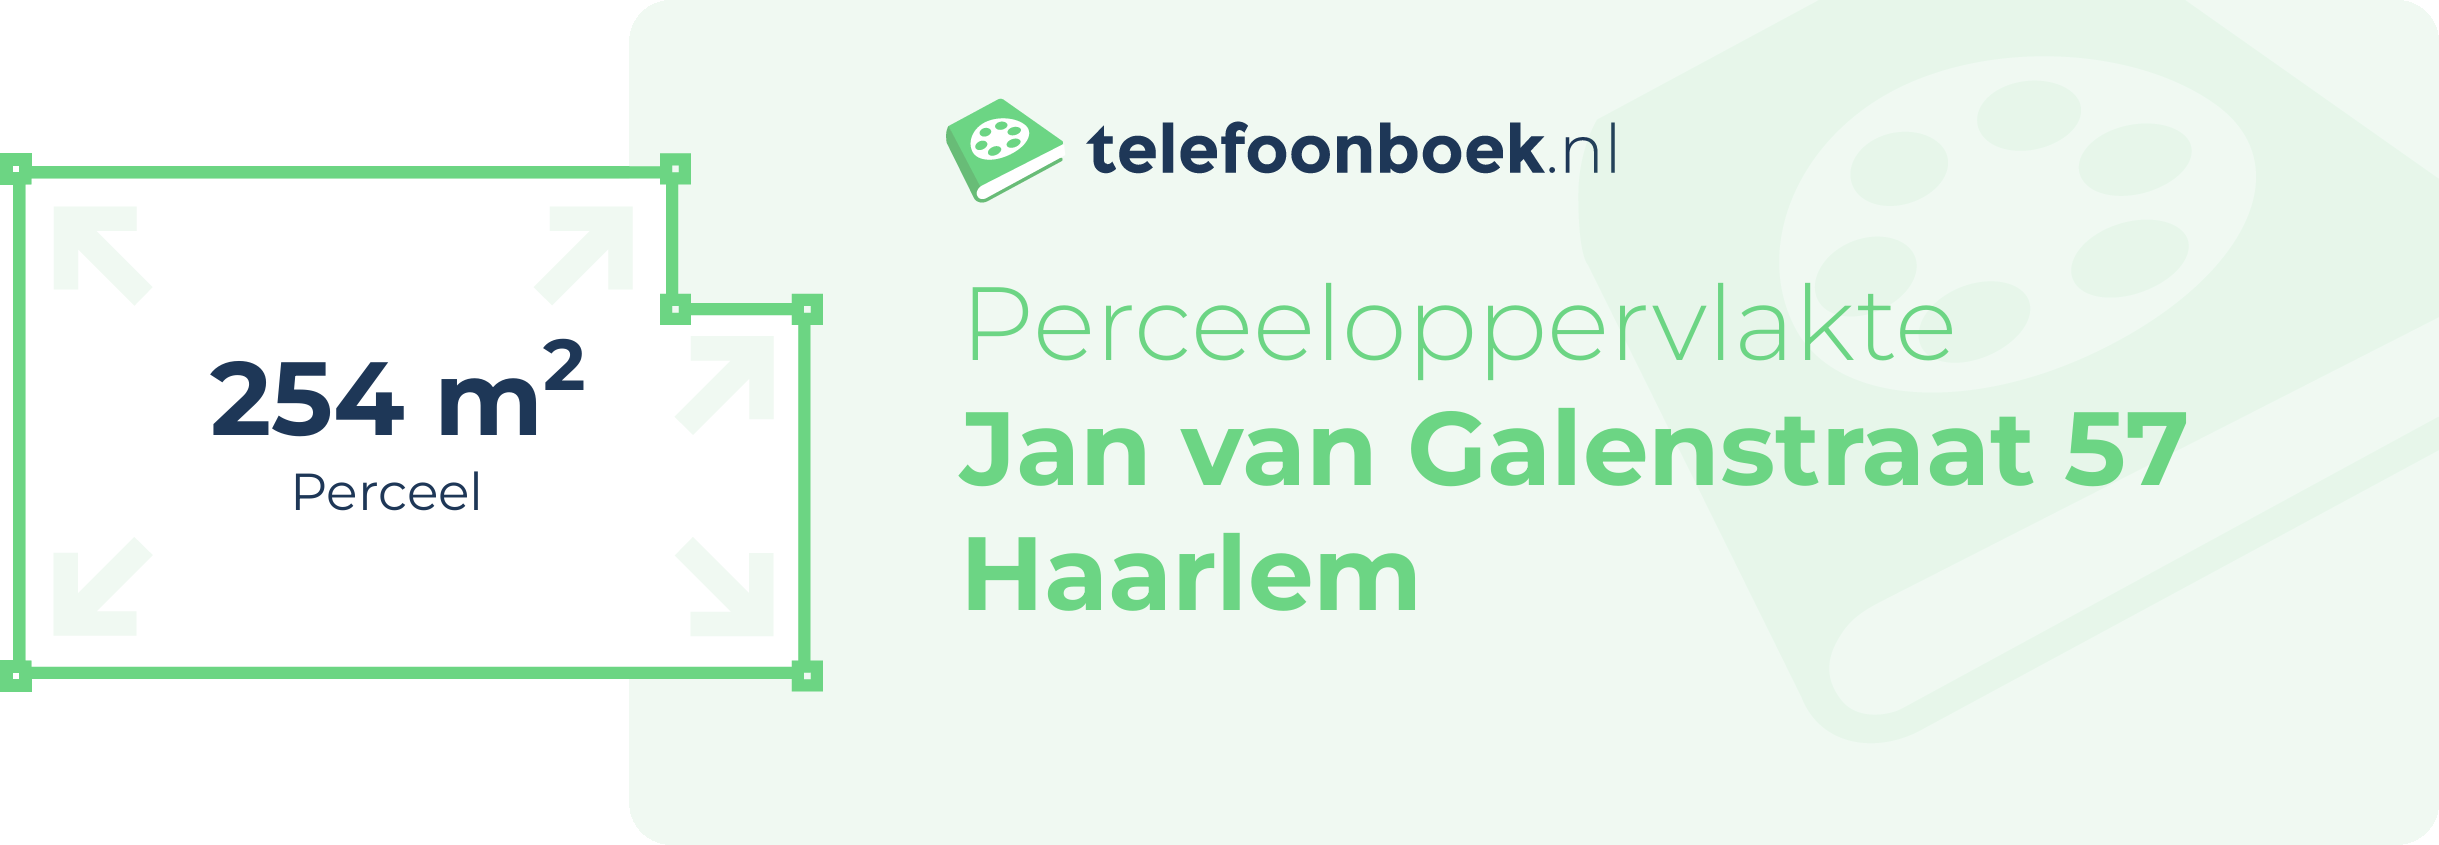 Perceeloppervlakte Jan Van Galenstraat 57 Haarlem